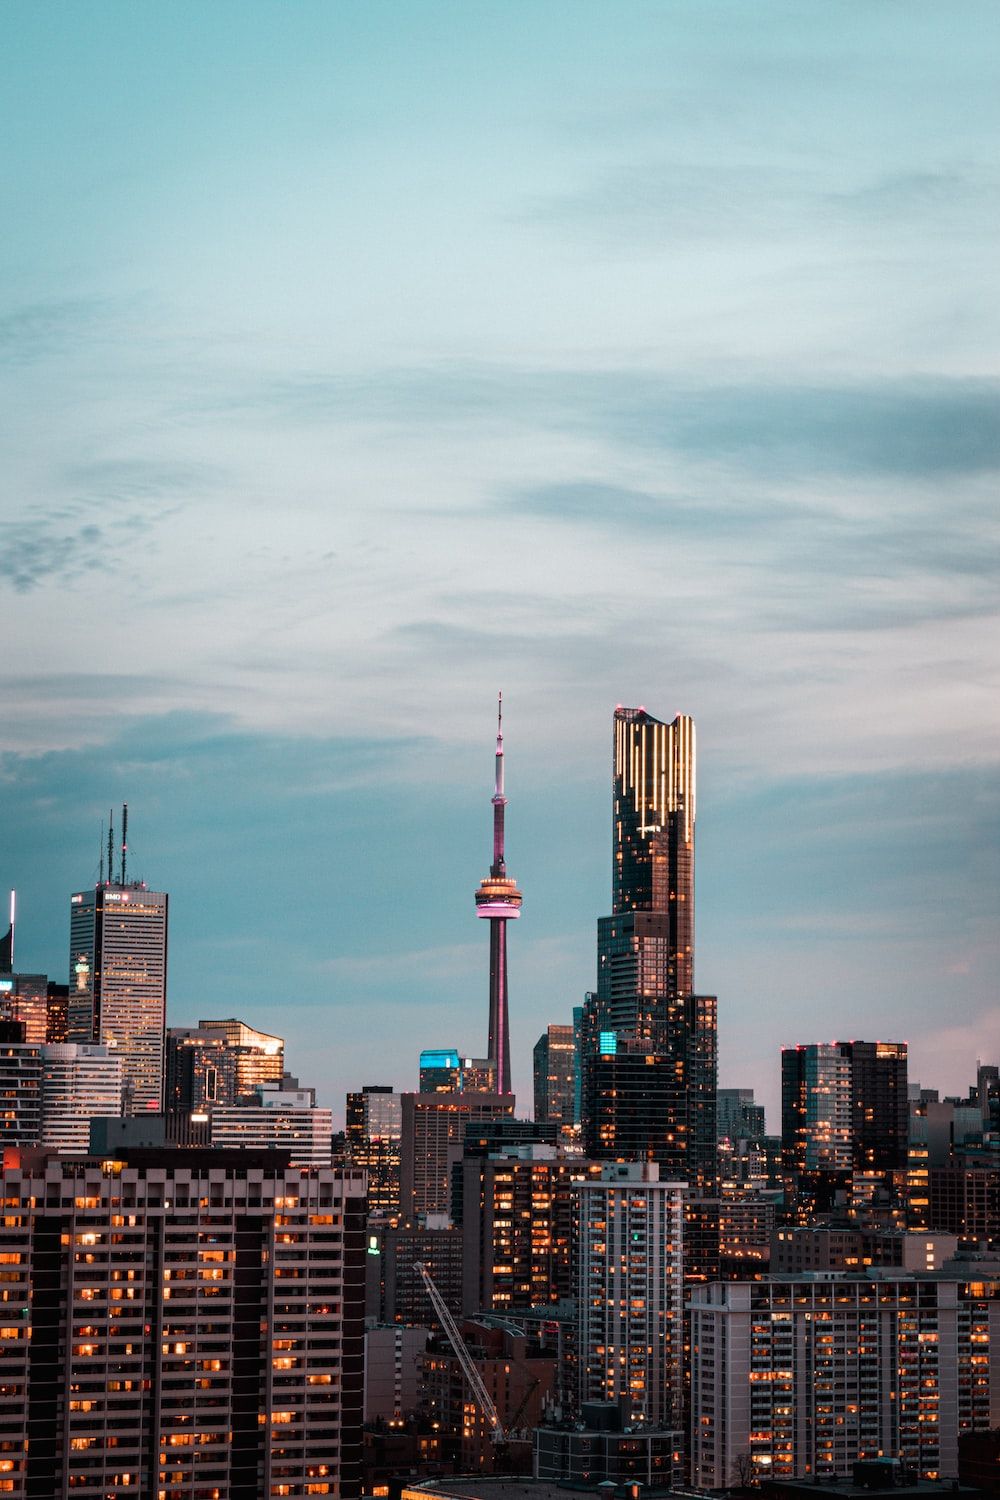  IPhone Stadt Hintergrundbild 1000x1500. Foto zum Thema Skyline der Stadt tagsüber unter grauem, bewölktem Himmel